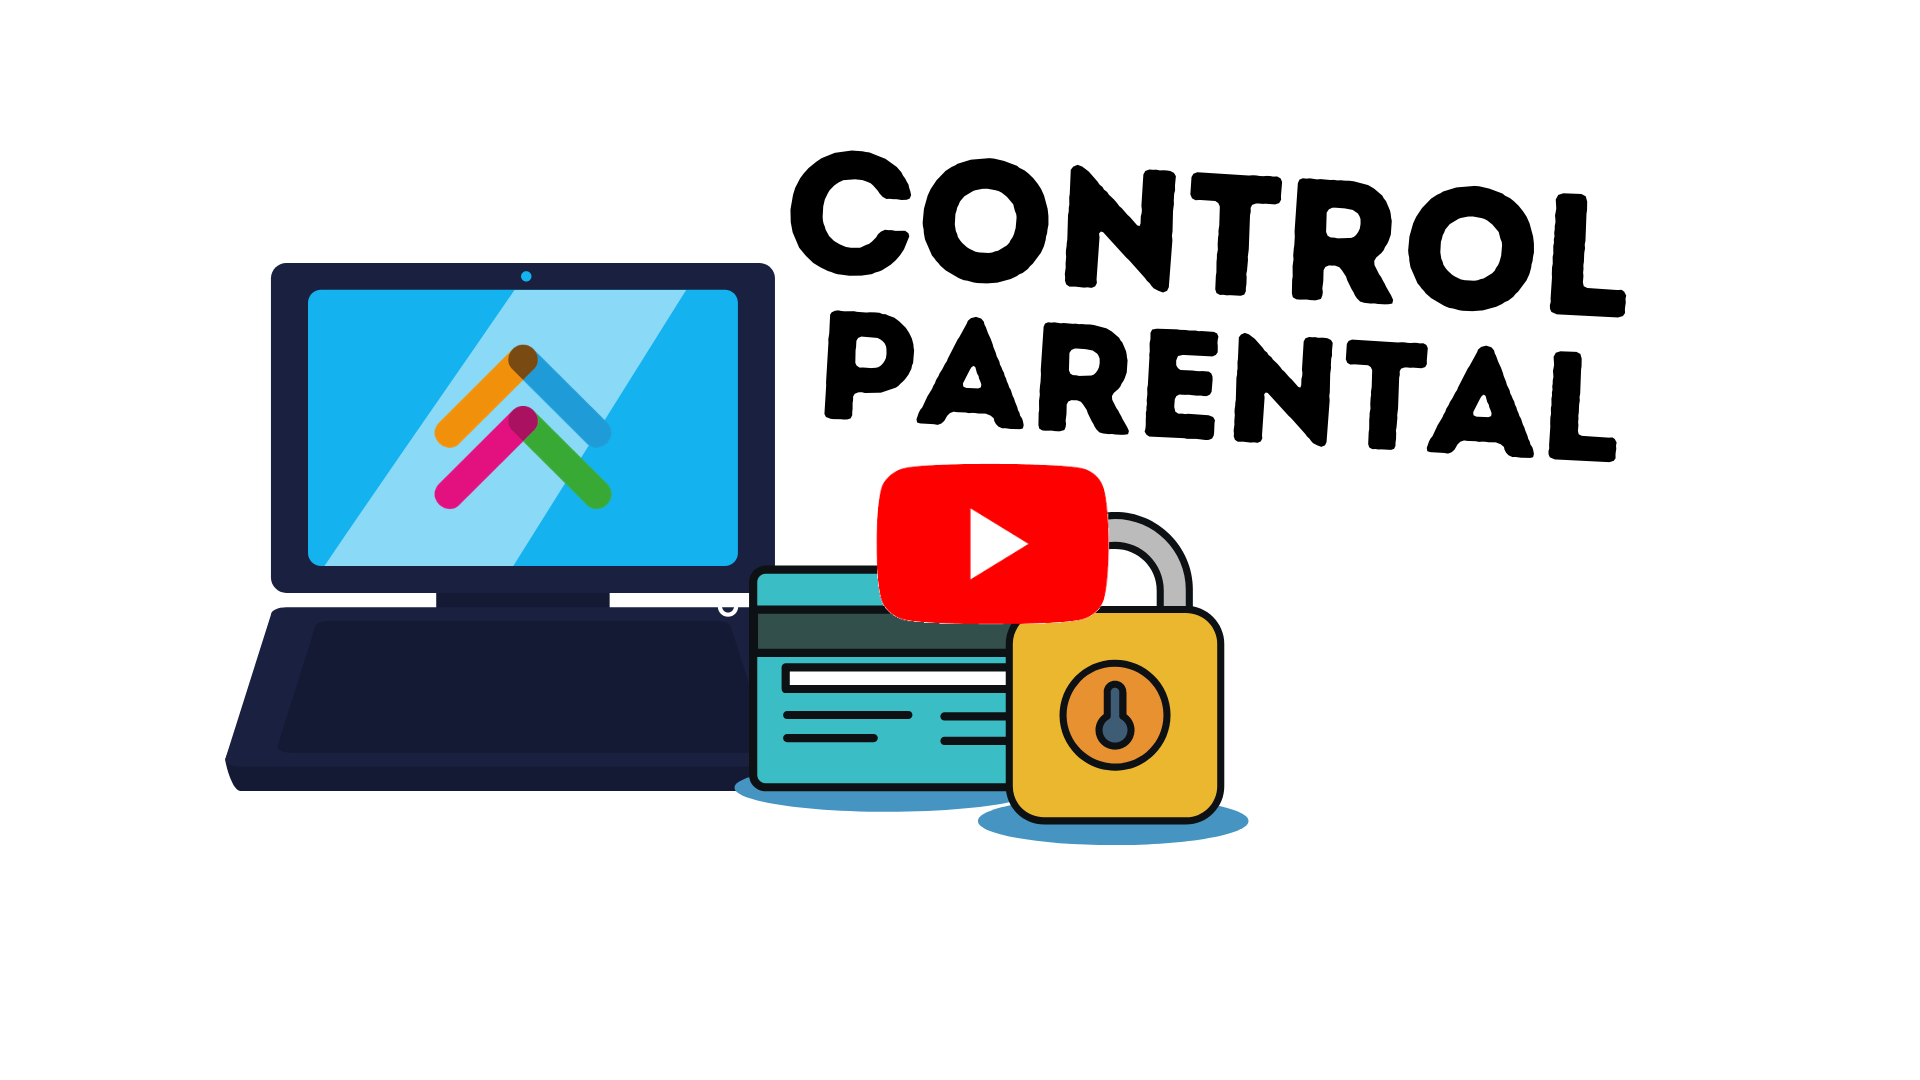 Родительский контроль в интернете. Родительский контроль картинки. Родительский контроль иллюстрация. Родительский контроль в интернете картинки. Parents control